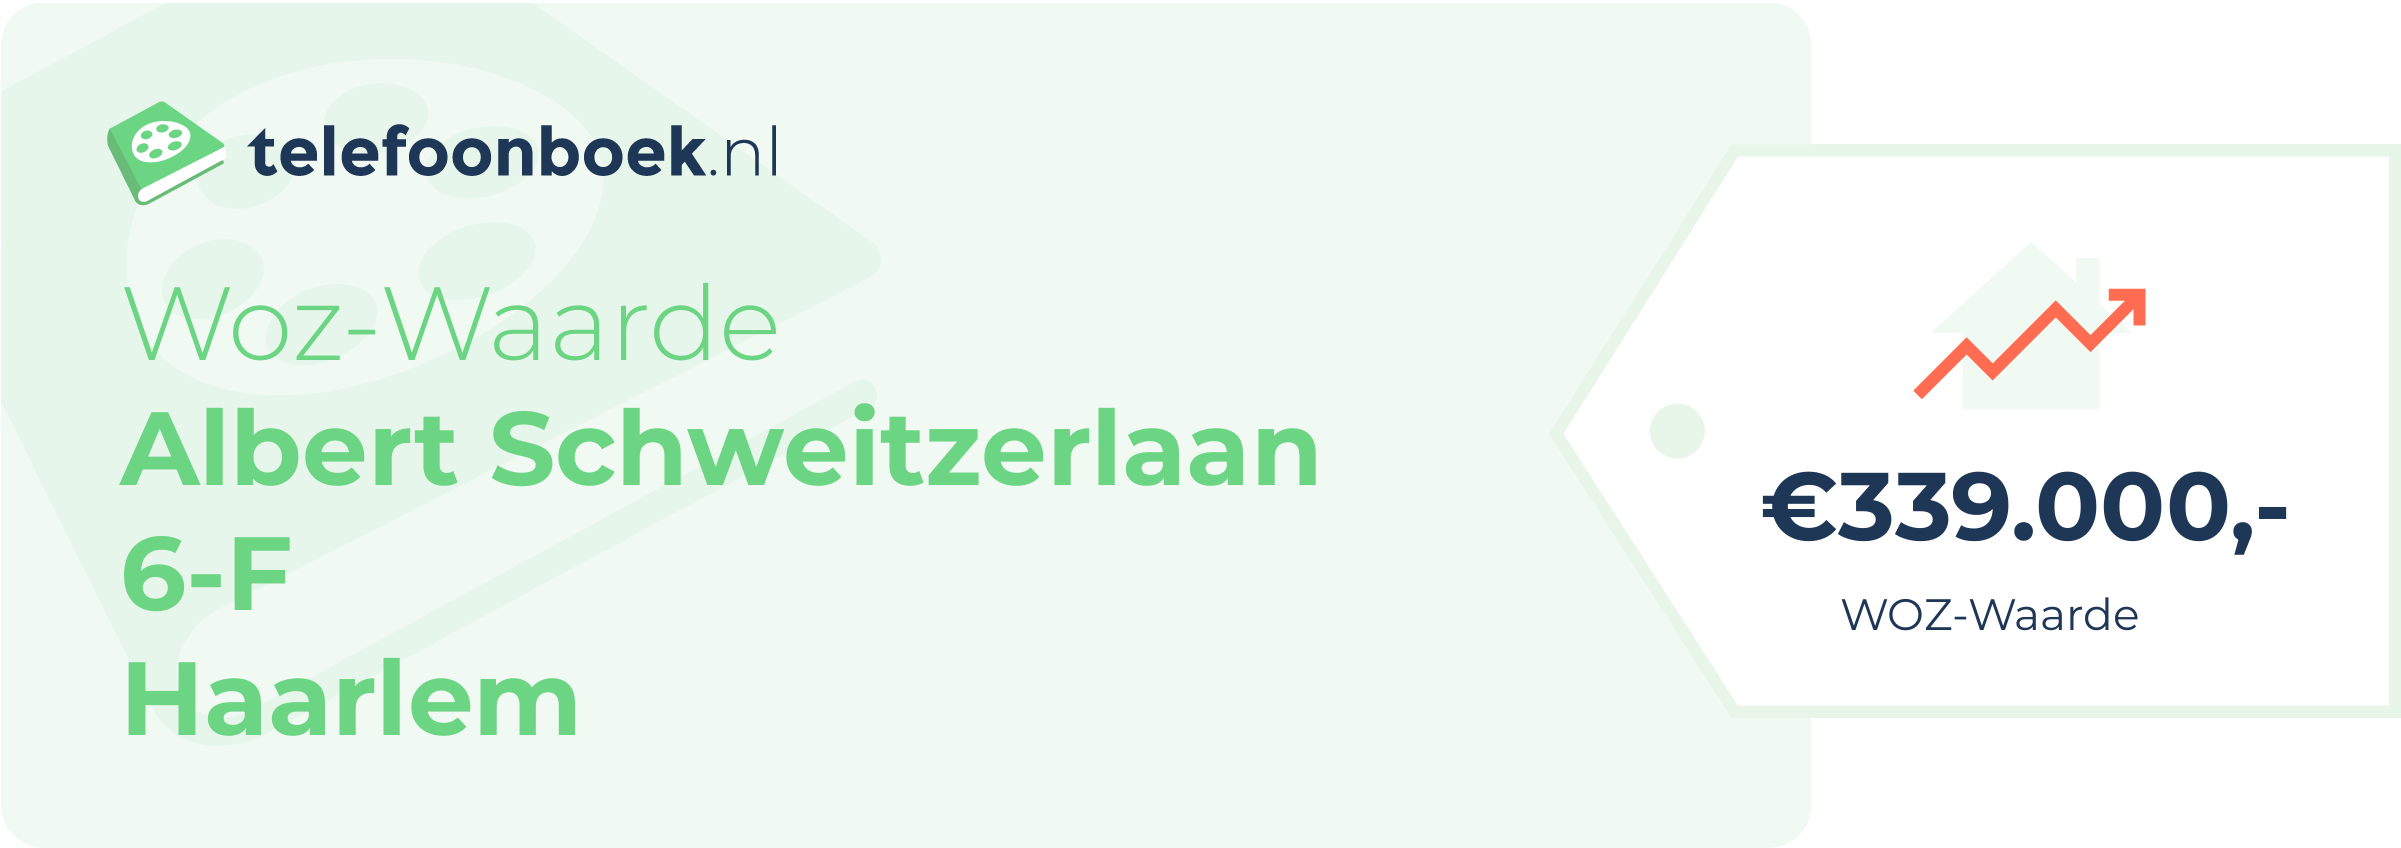 WOZ-waarde Albert Schweitzerlaan 6-F Haarlem